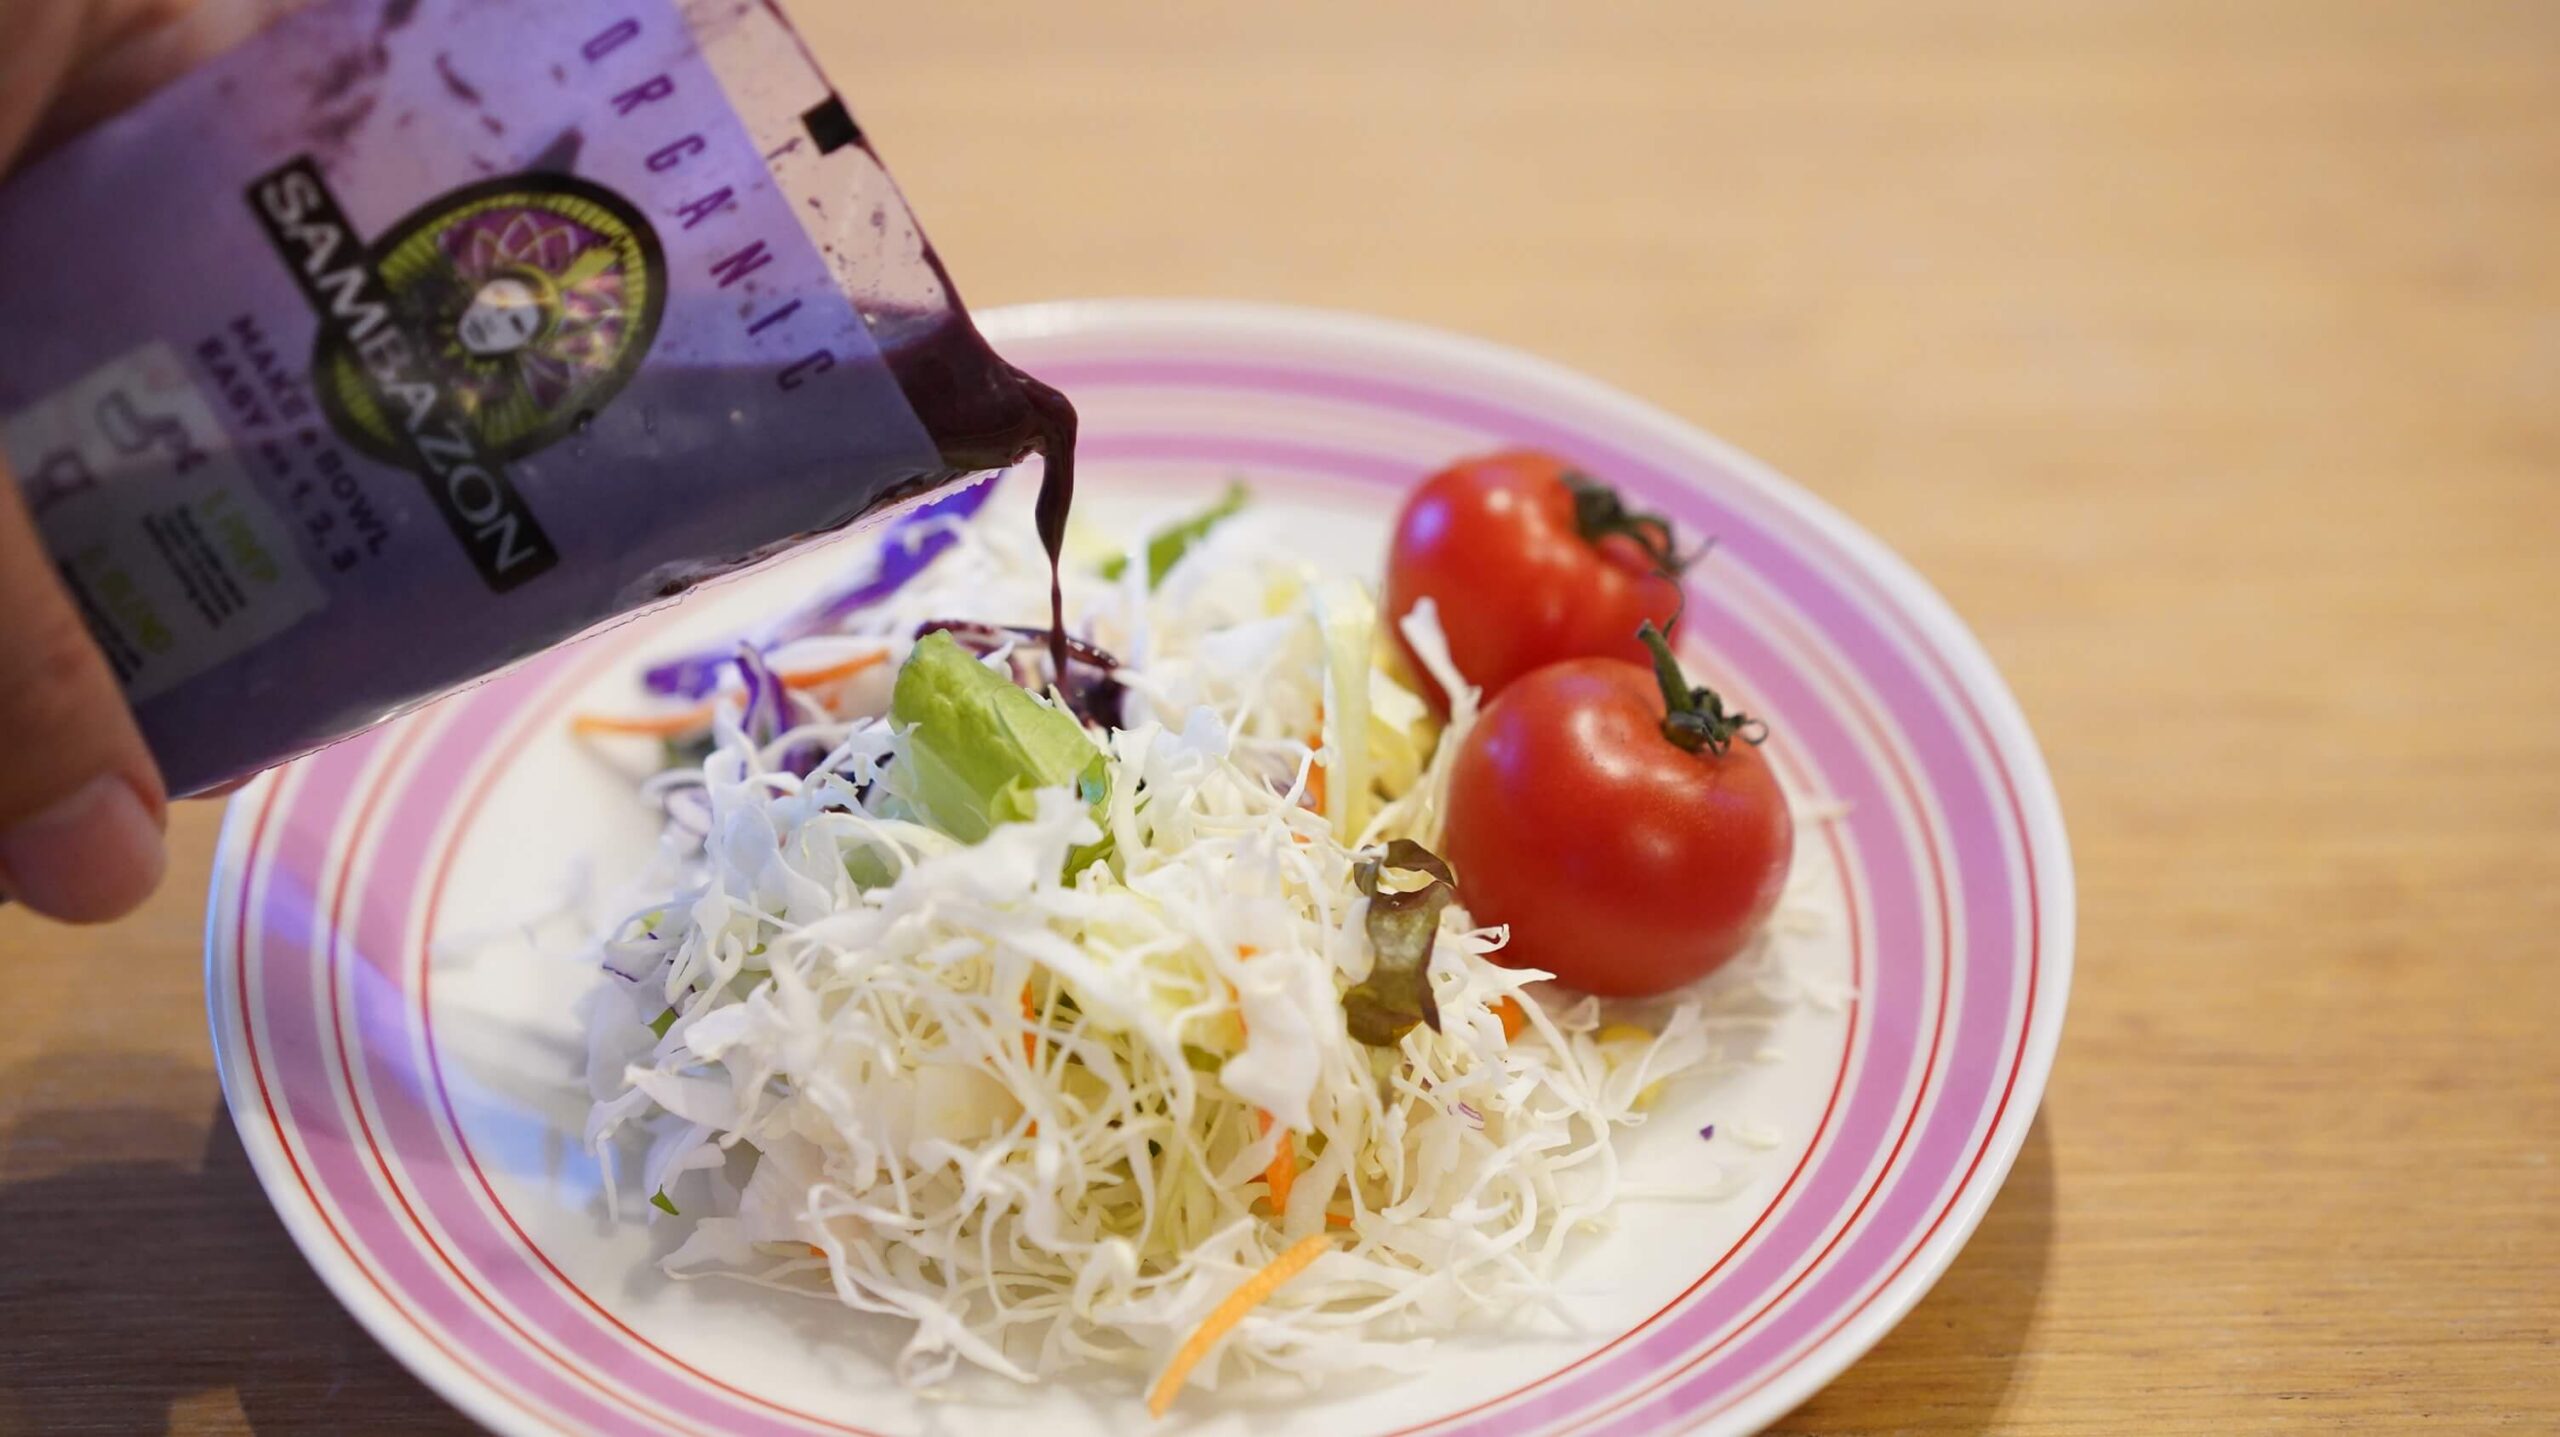 コストコの冷凍食品アサイー「サンバゾン・アサイースムージーパック」をサラダにかけている写真